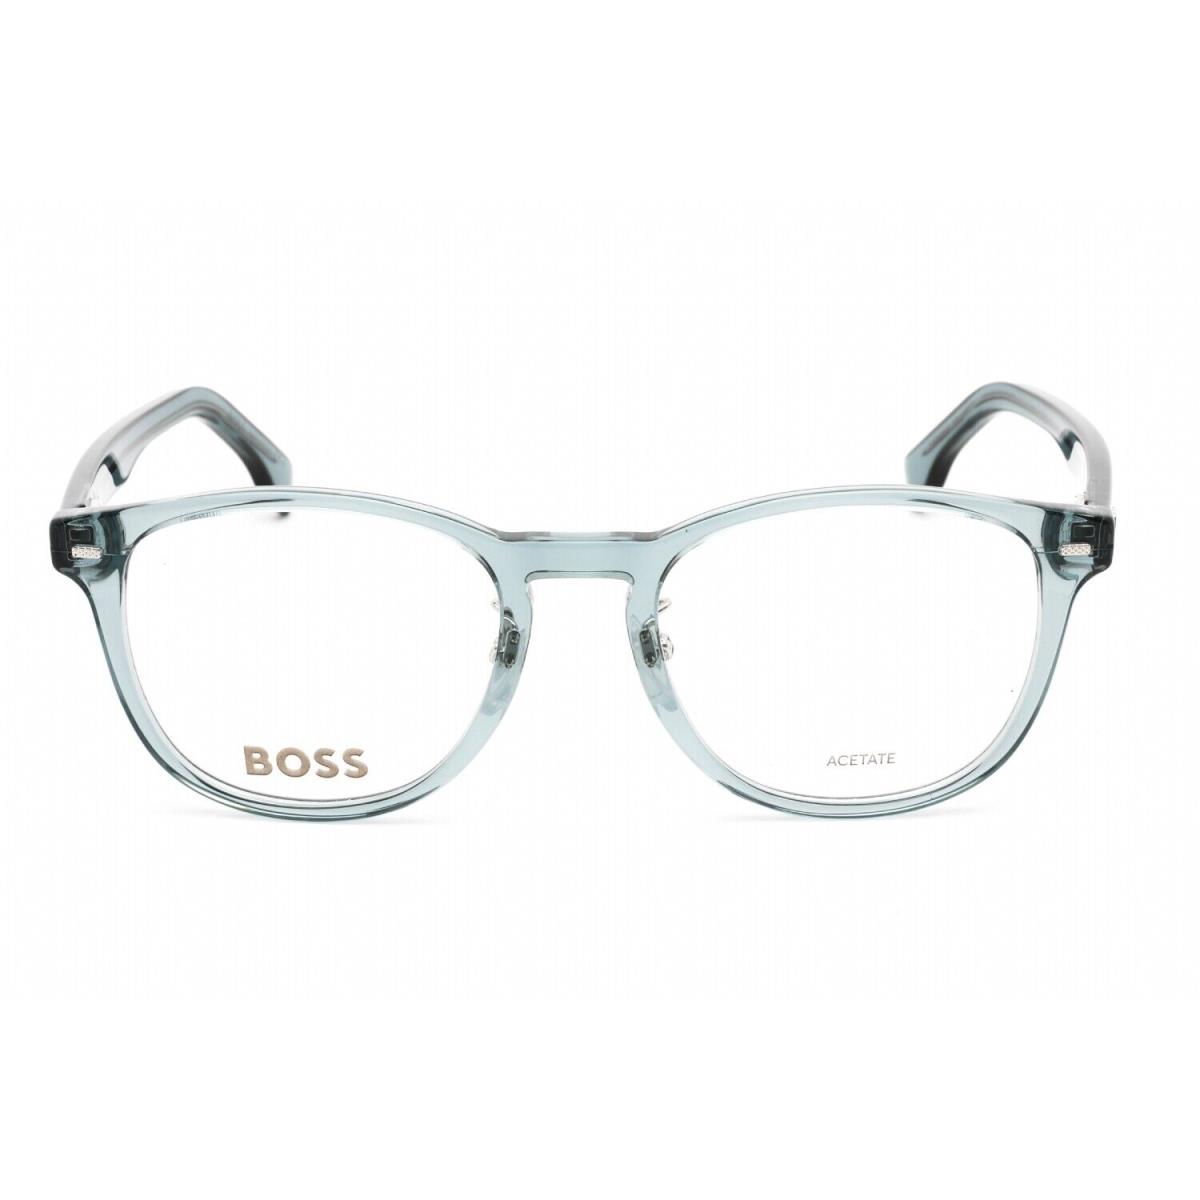 Hugo Boss Boss 1479/F 0PJP 00 Eyeglasses Blue Frame 52mm